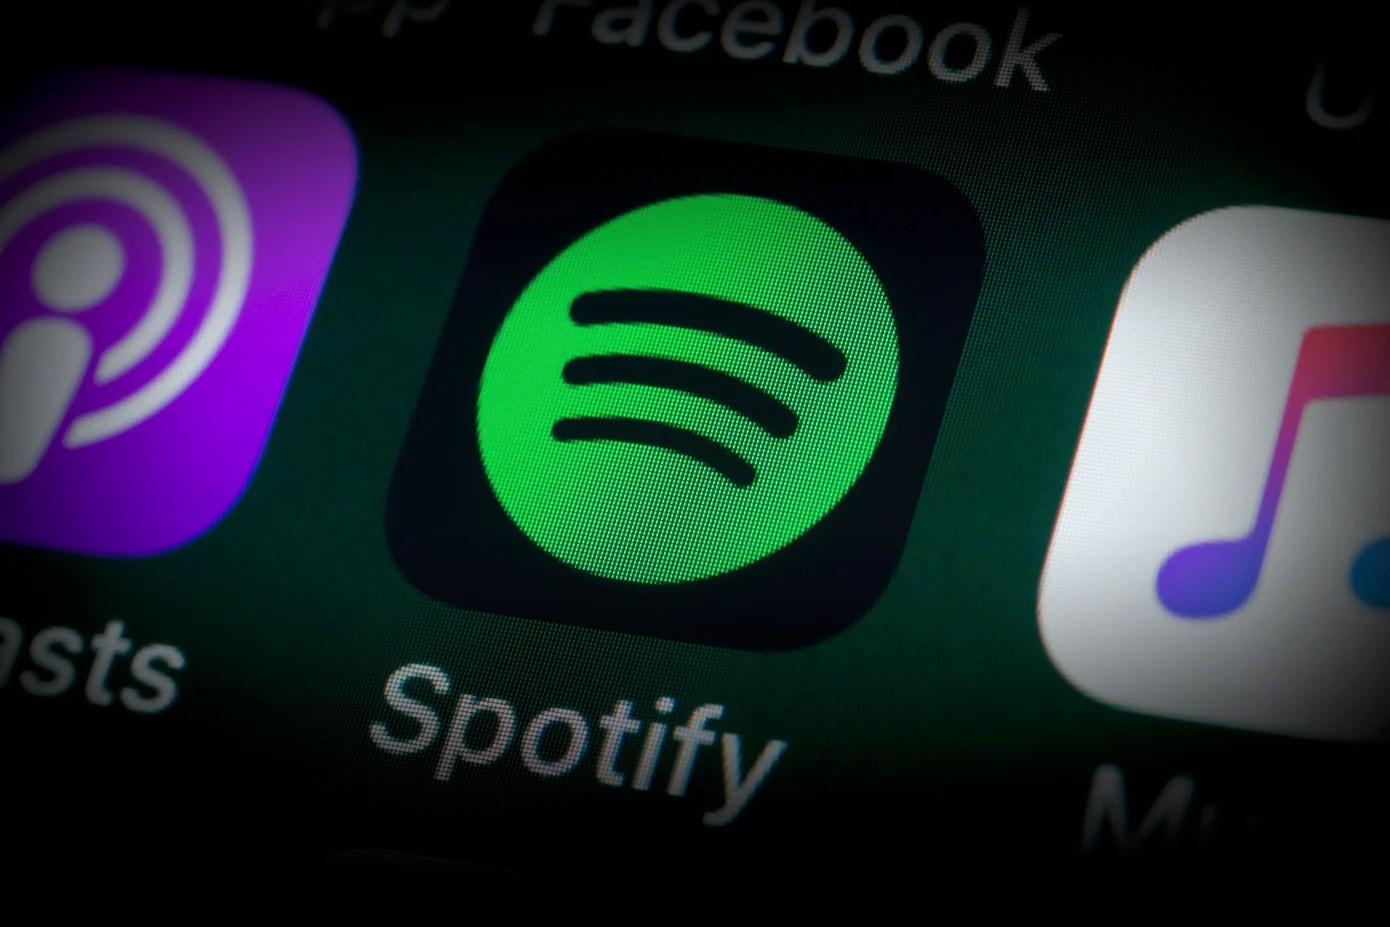 Spotify HiFi a du retard et ça pourrait bien être à cause d’Apple